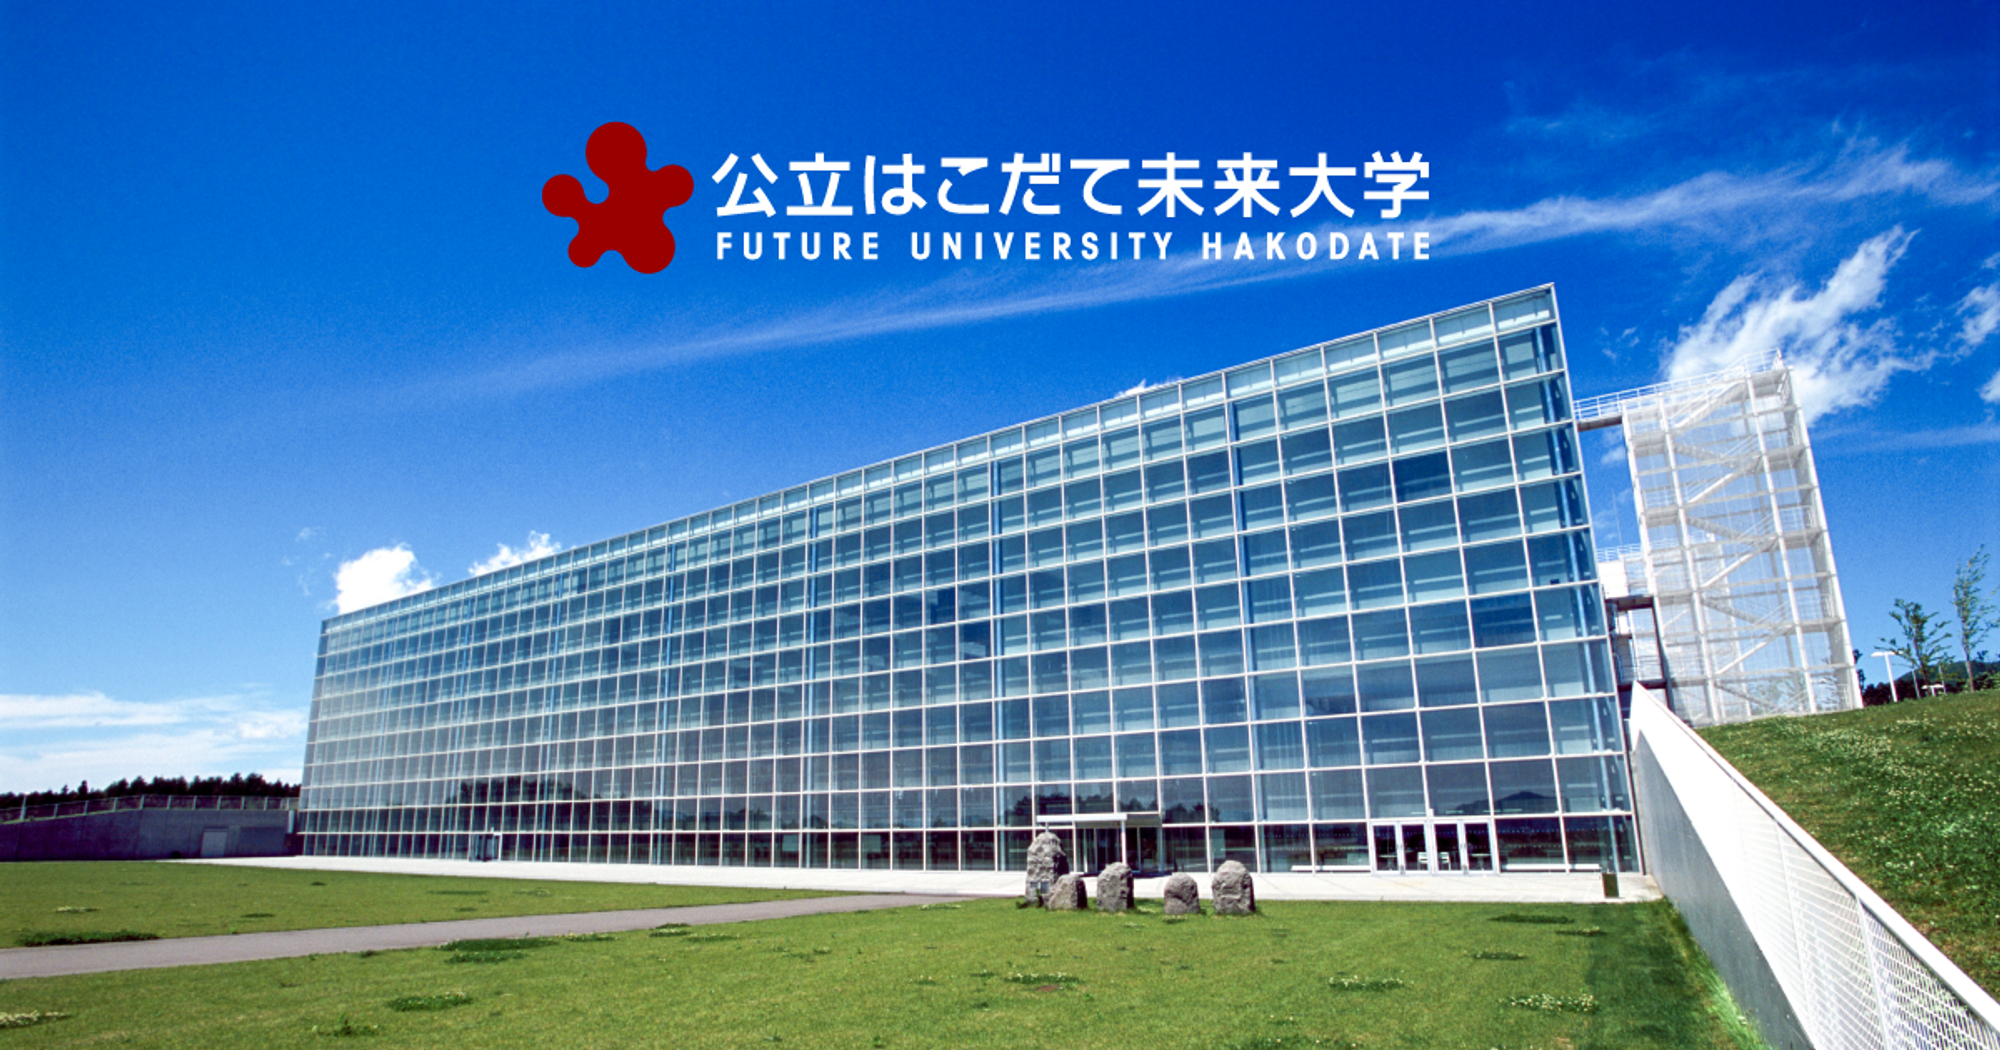 公立はこだて未来大学 -Future University Hakodate-